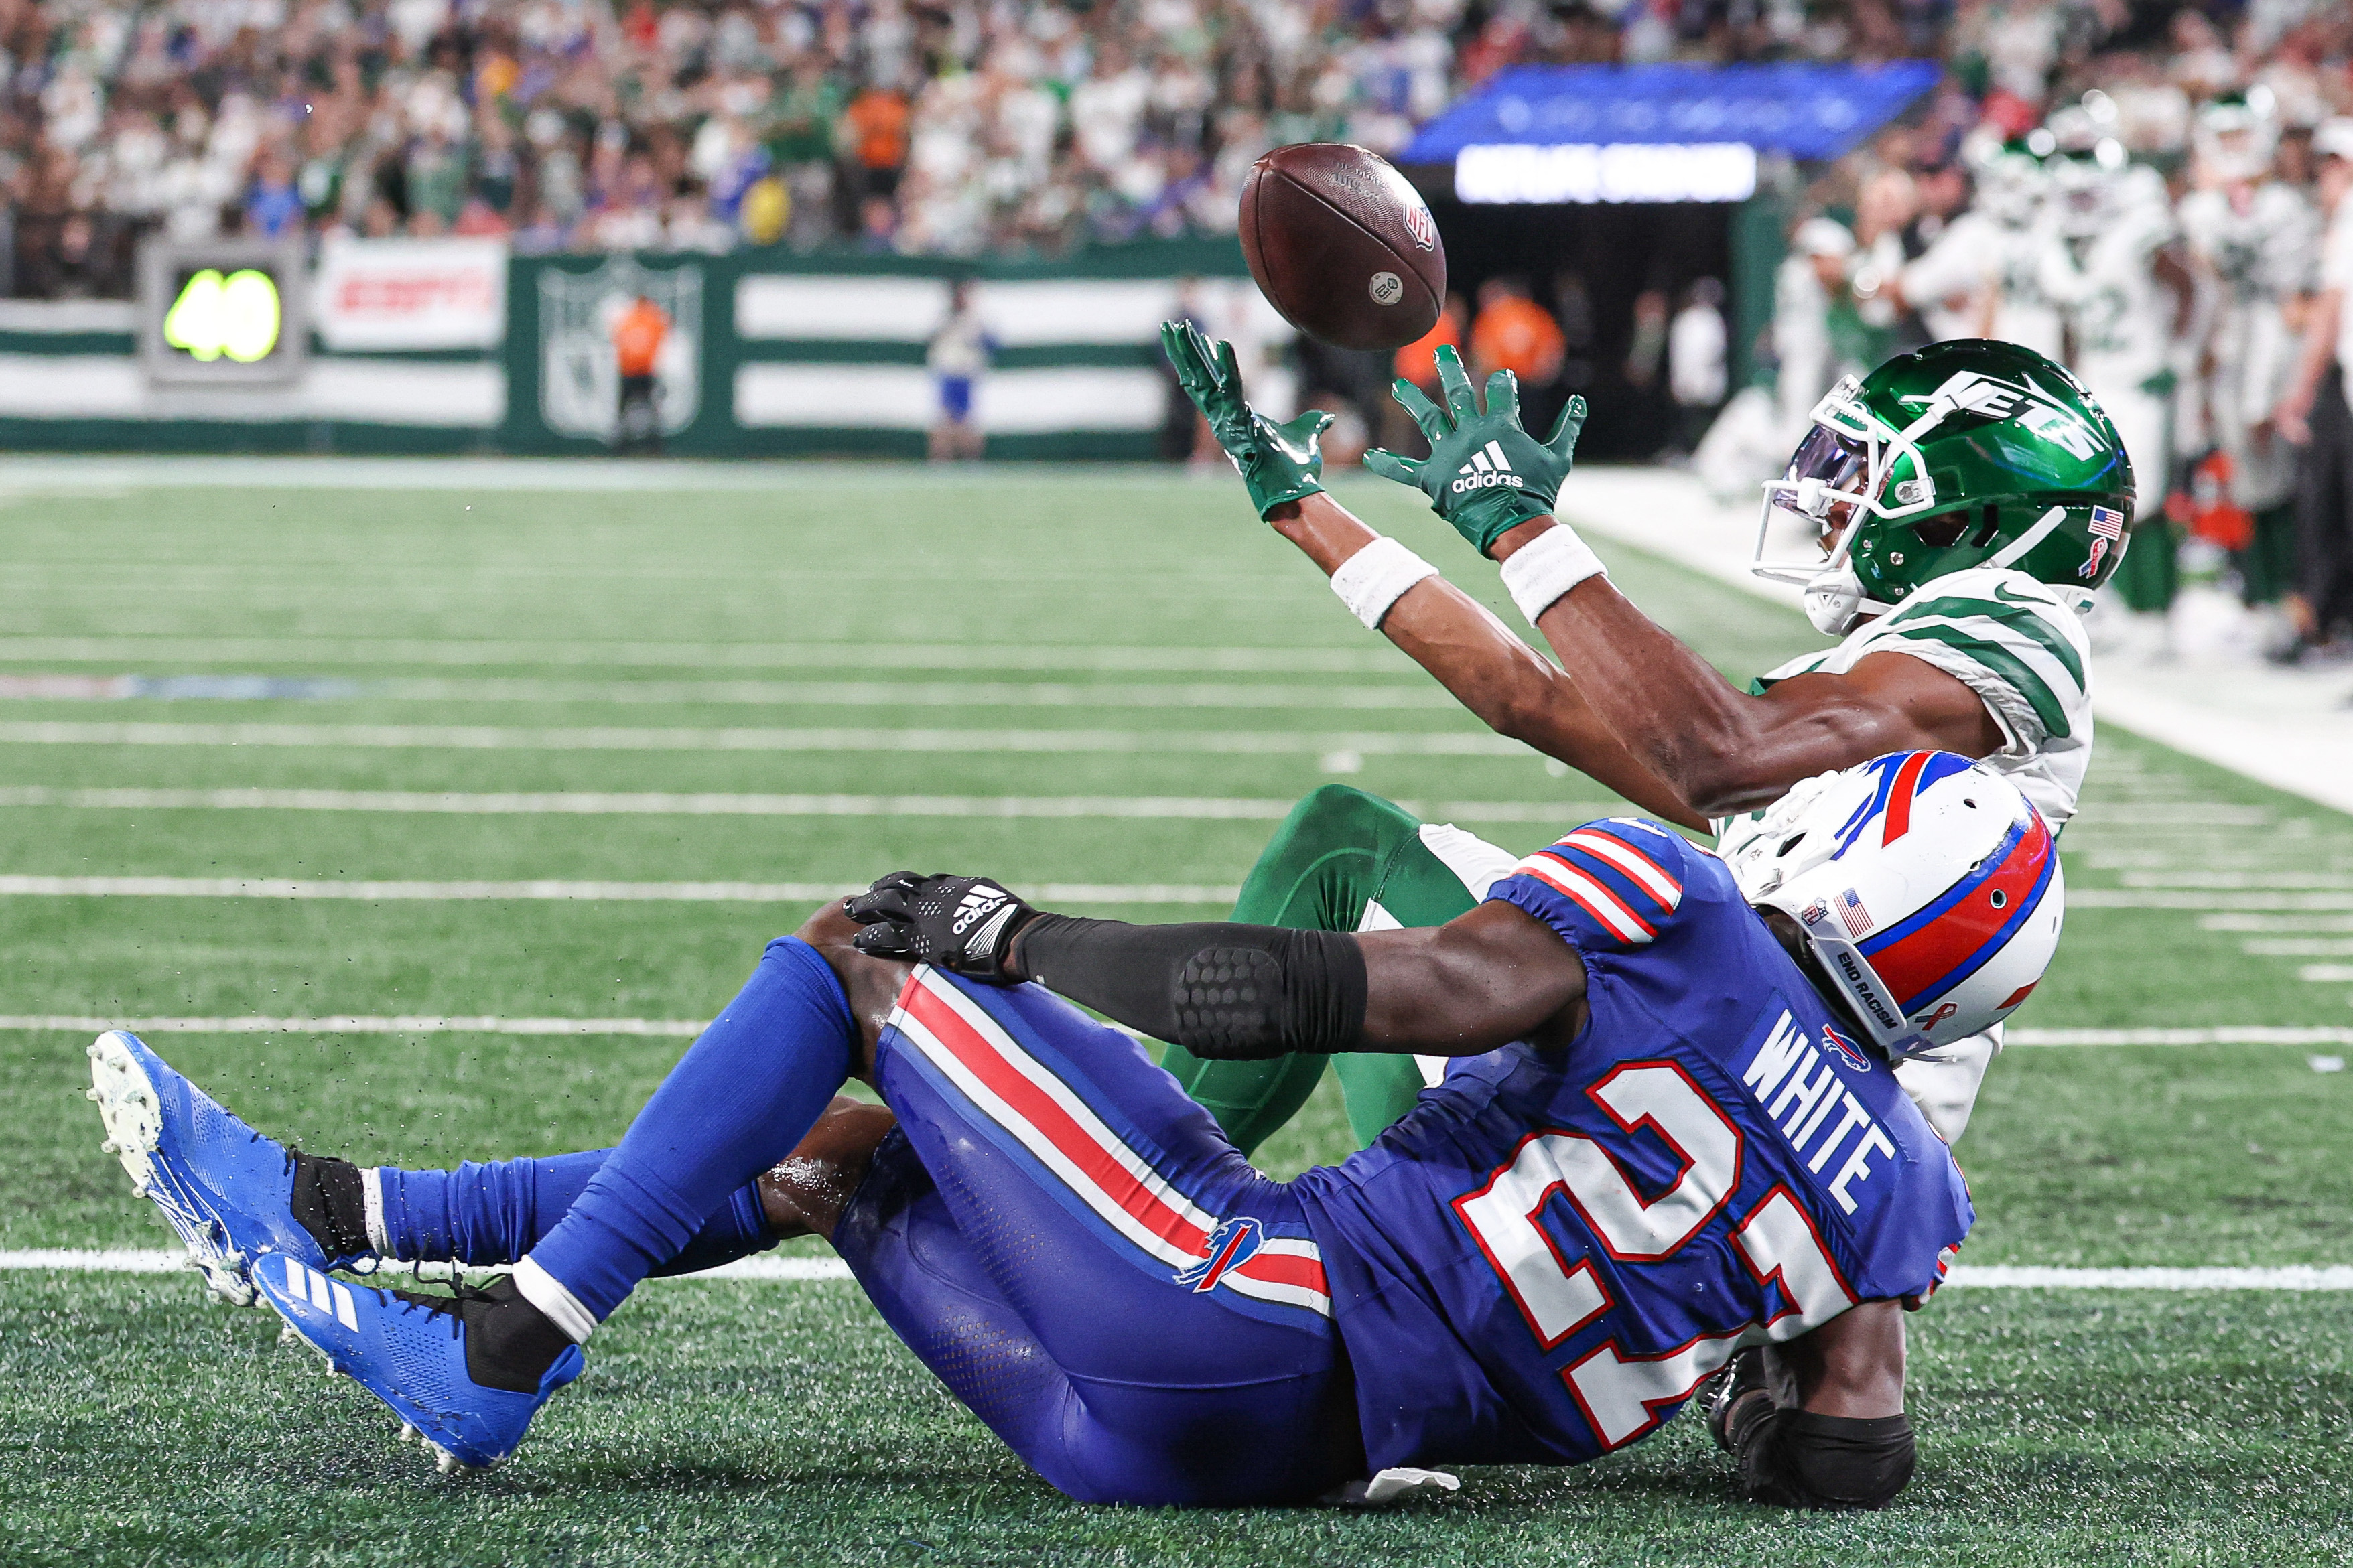 NFL : Aaron Rodgers blessé, les Jets gagnent mais pleurent